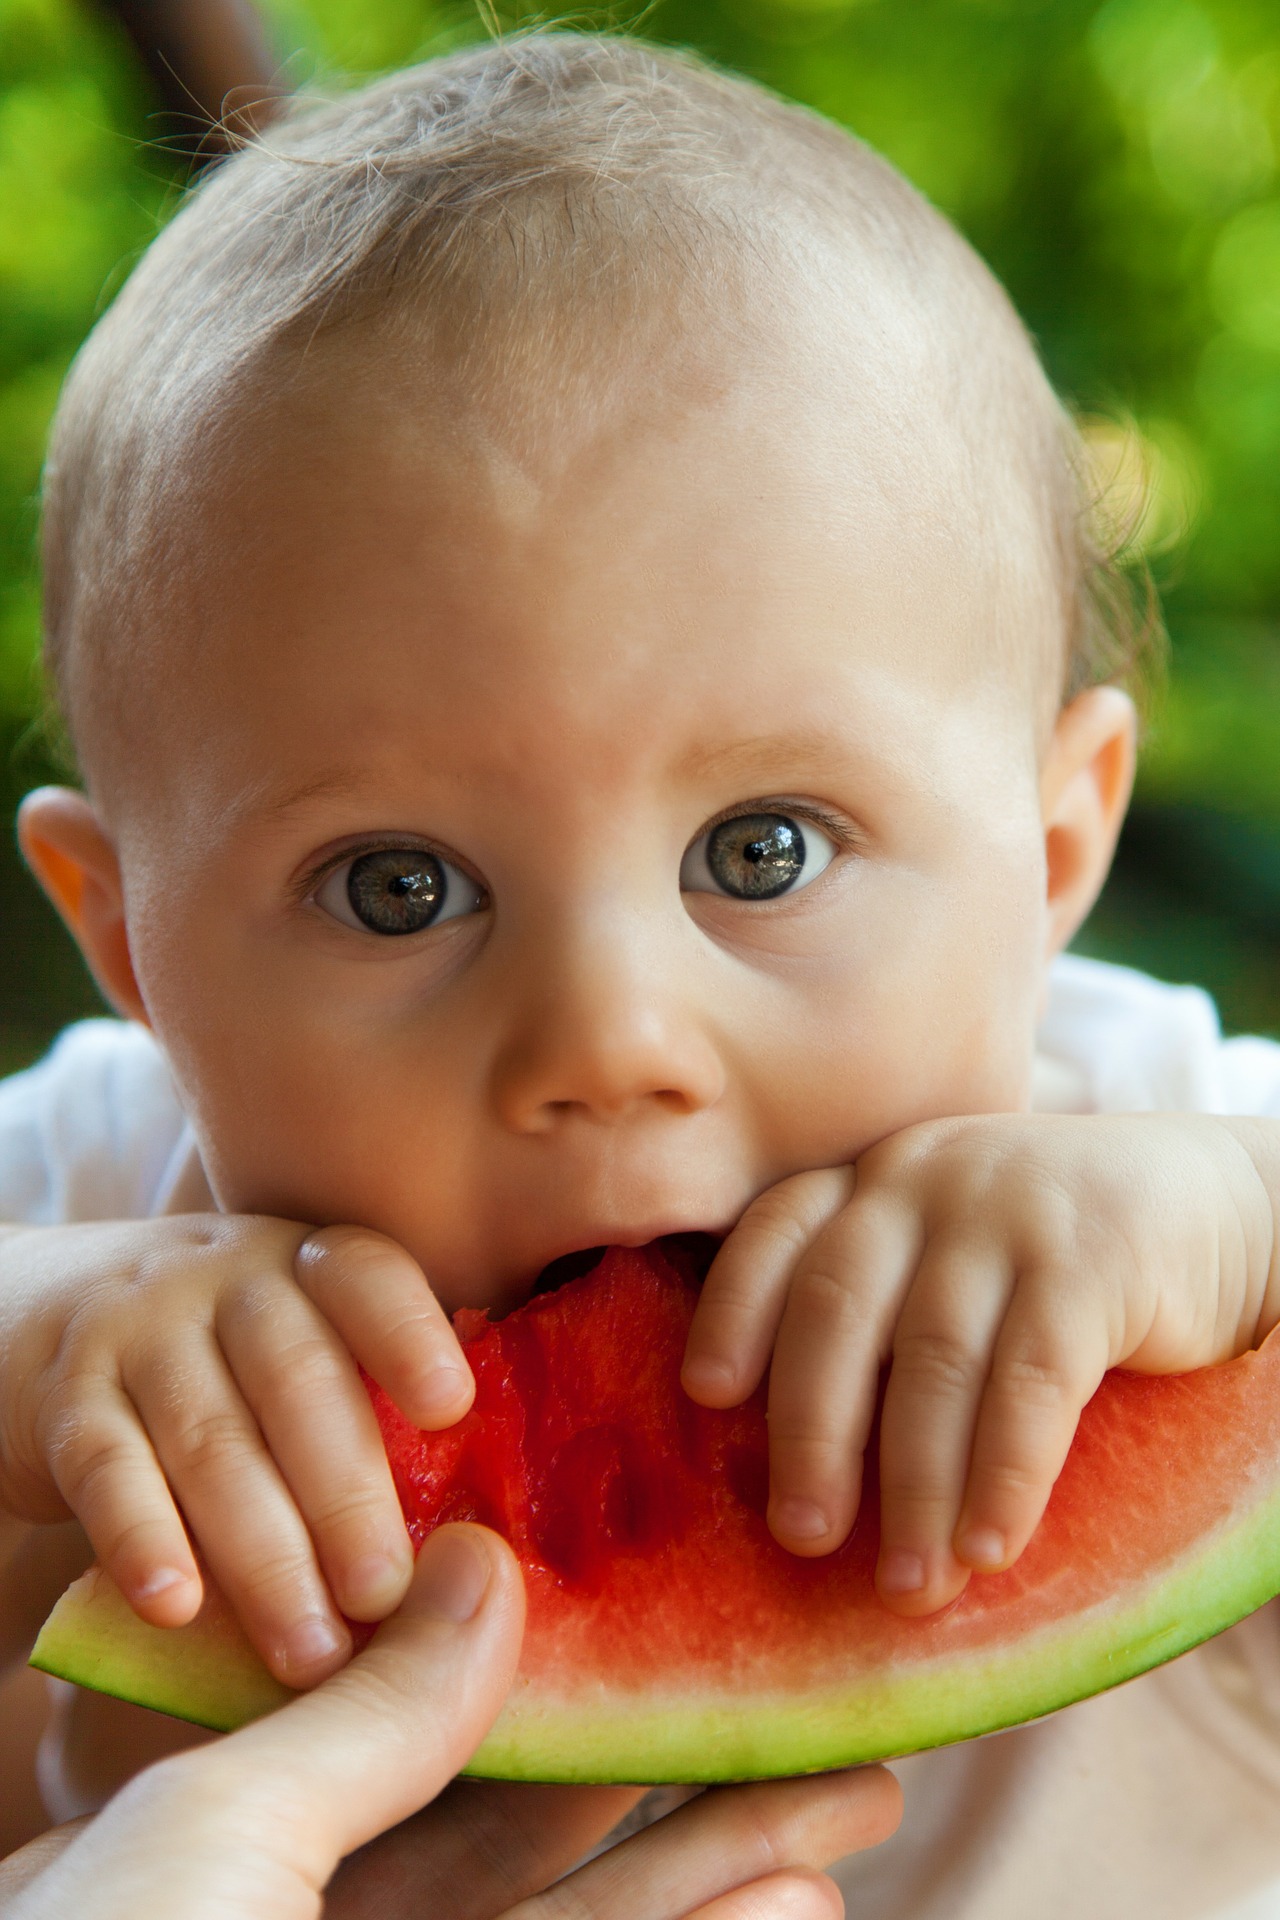 bébé manger melon d'eau